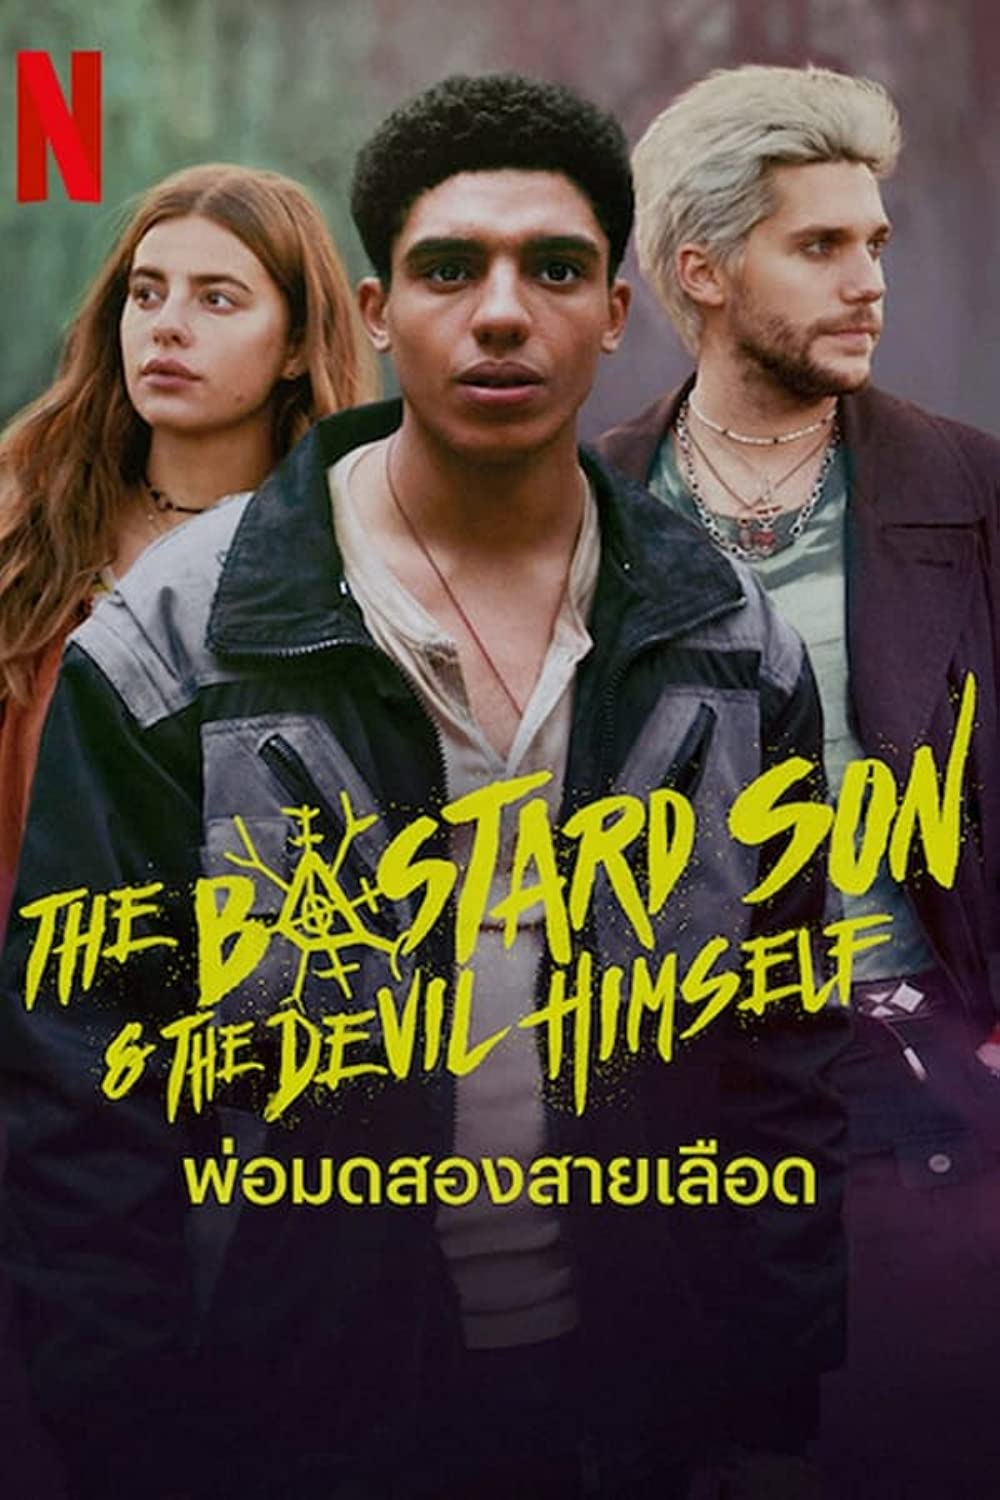 مسلسل The Bastard Son & The Devil Himself الموسم 1 الحلقة 1 مترجمة